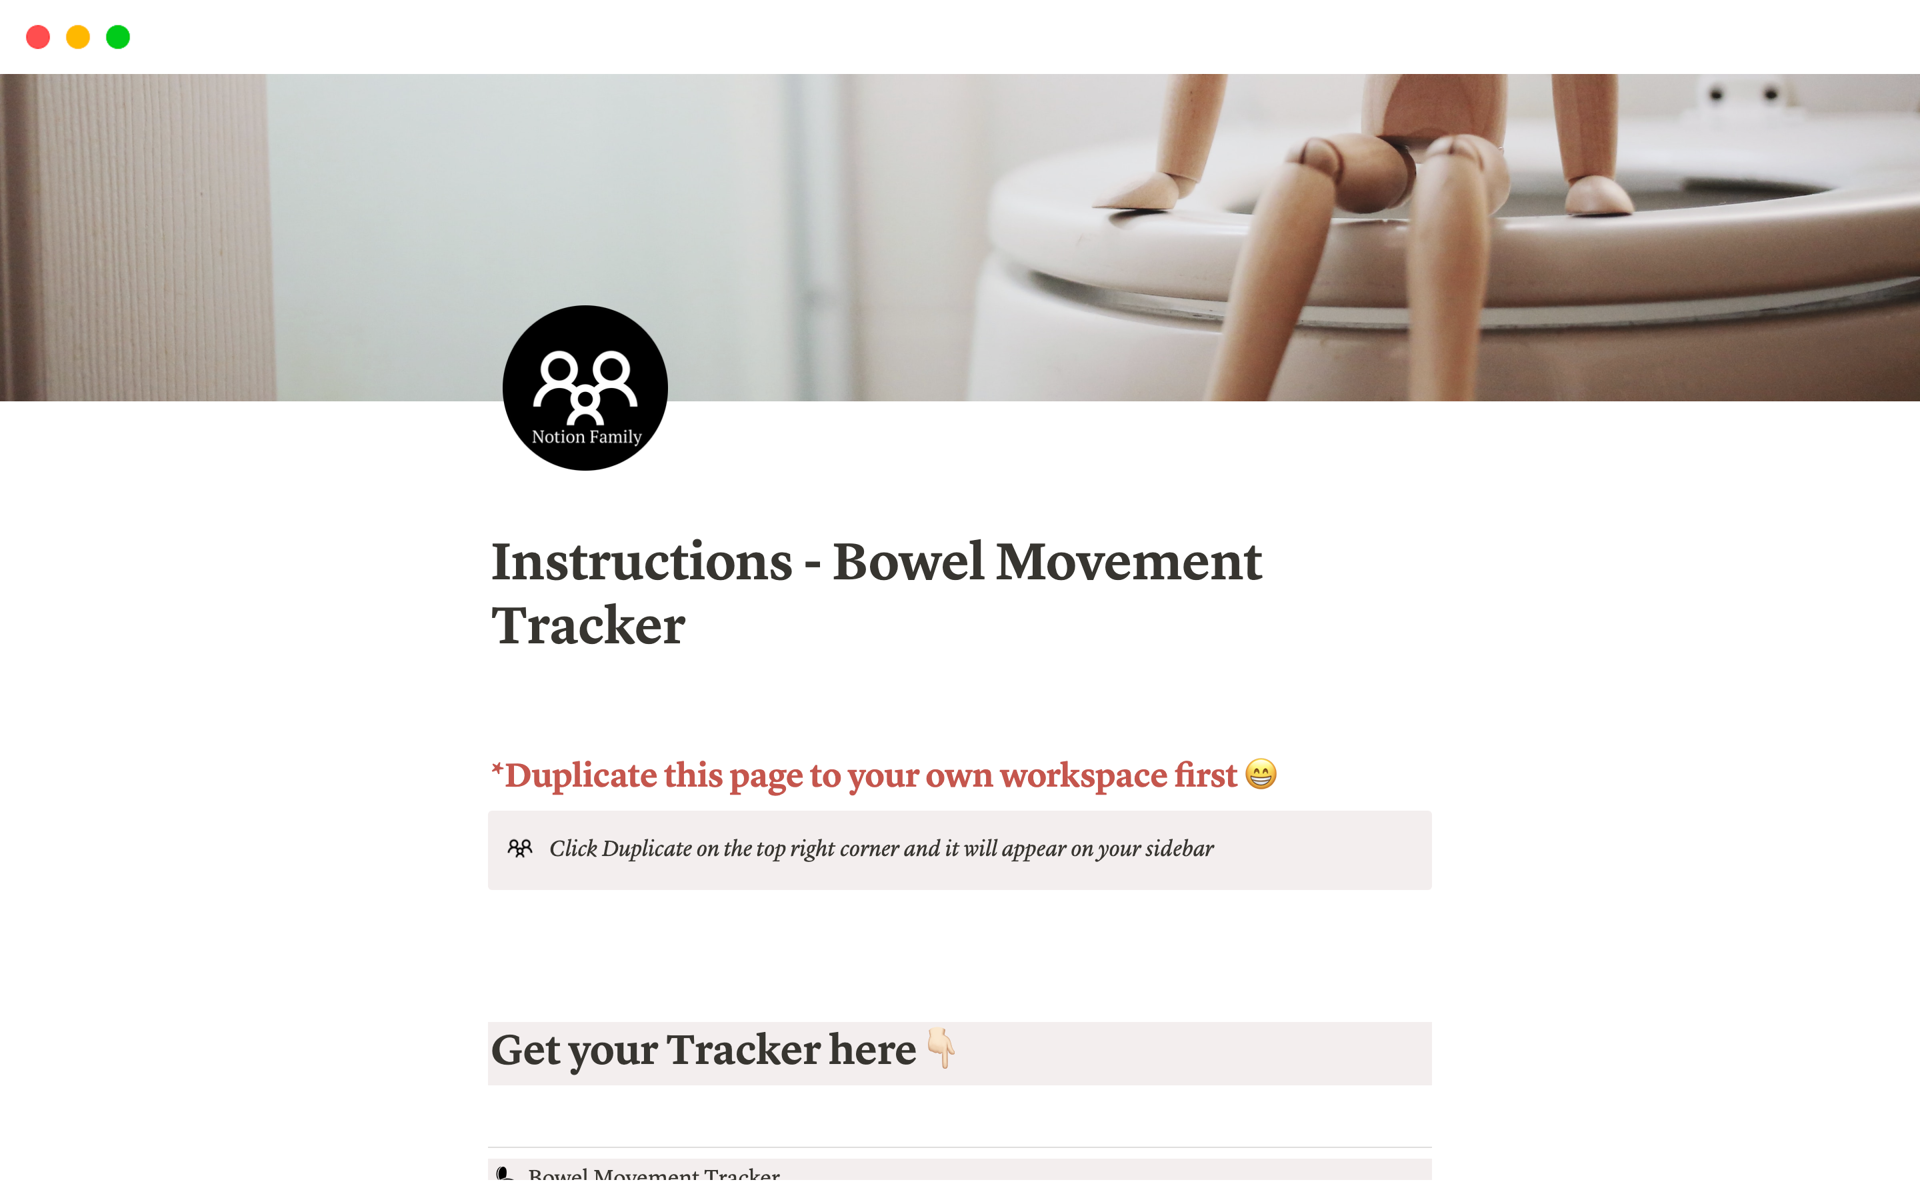 Galeria de modelos do Notion — Bowel Movement Tracker